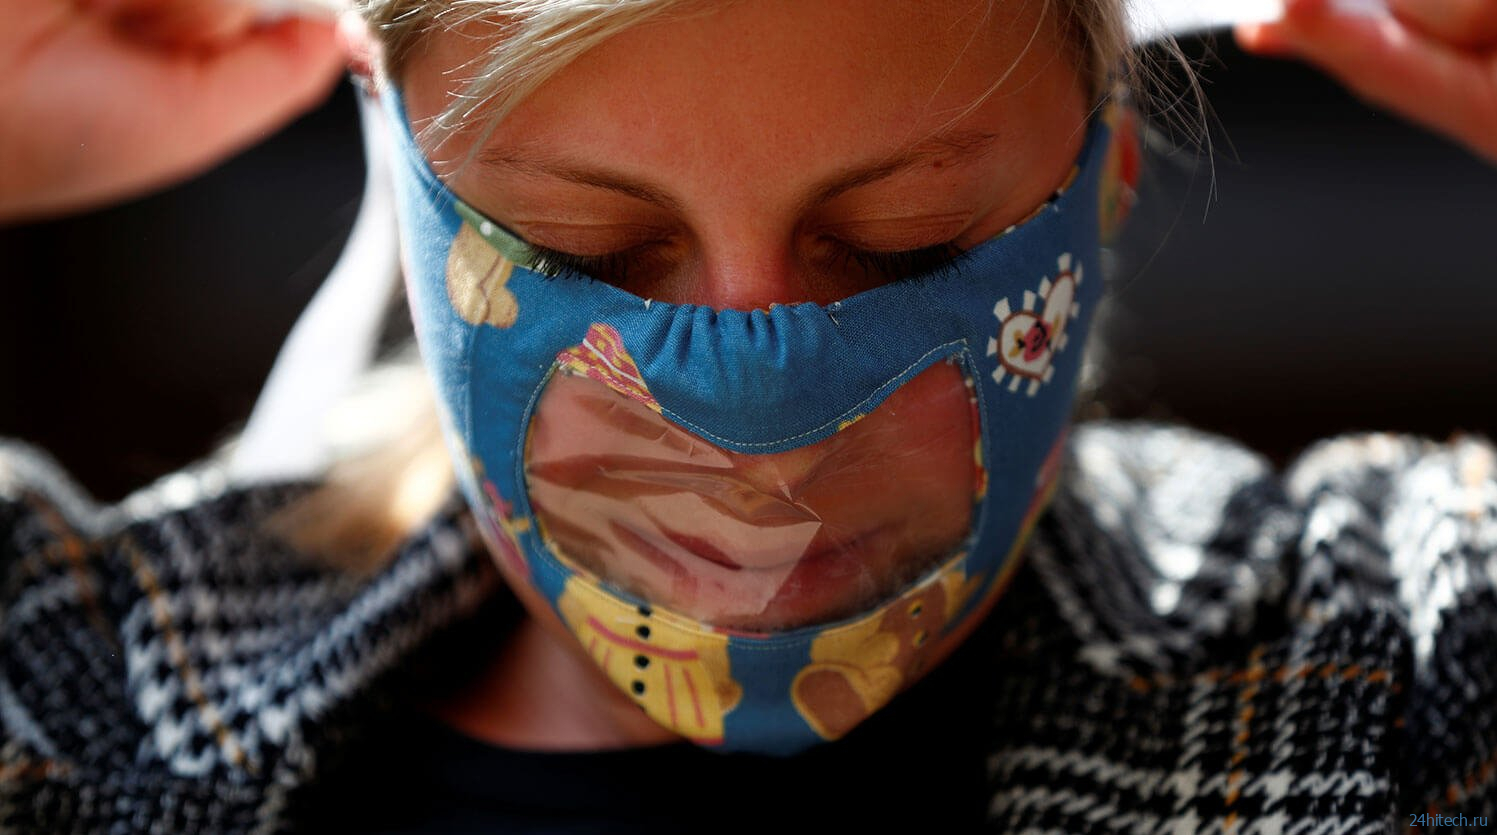 Действительно ли ношение масок опасно для детей — что говорит наука?